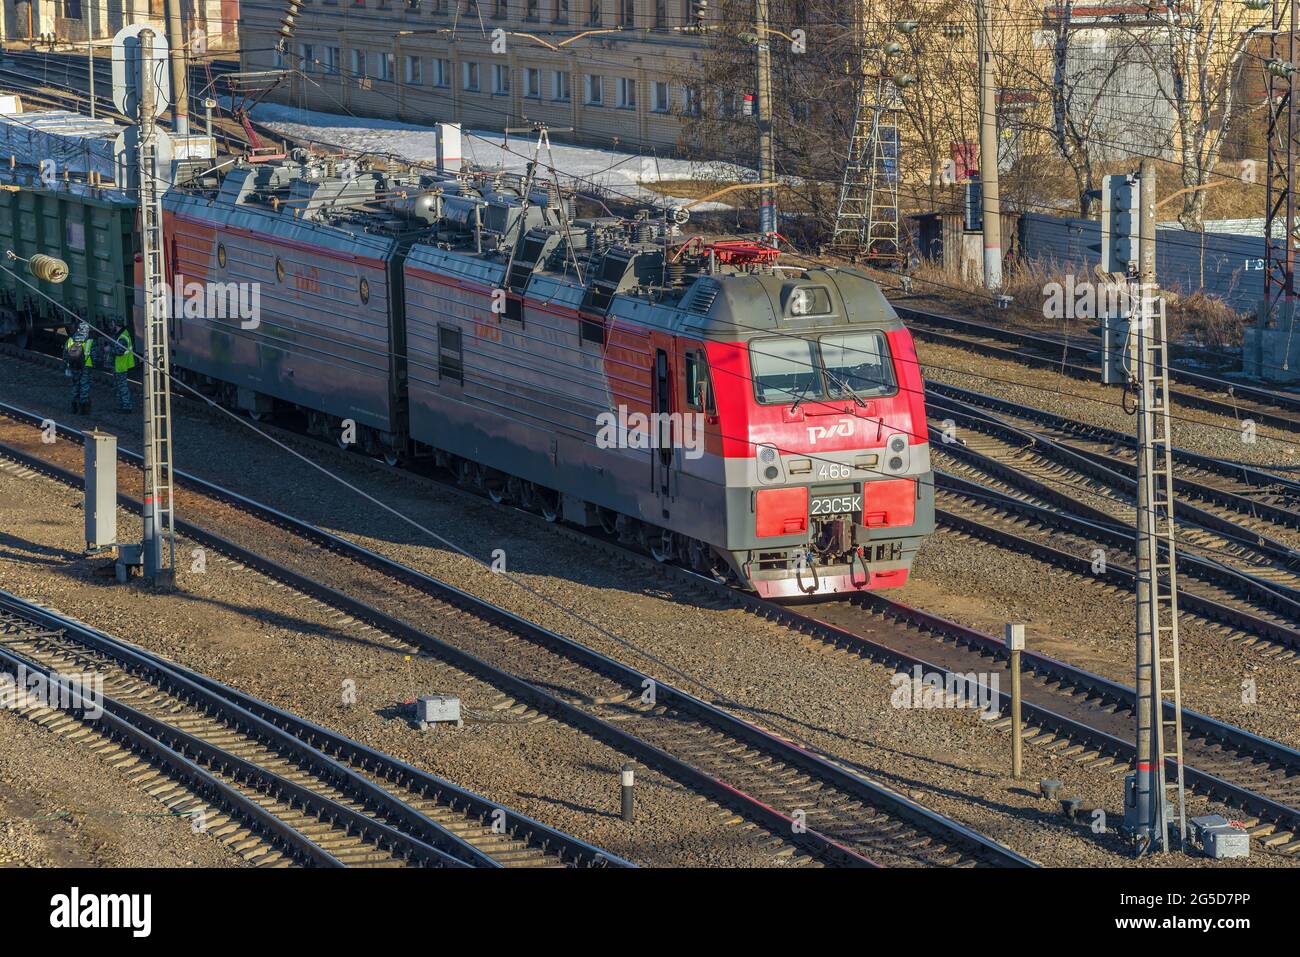 SHARYA, RUSSIE - 10 AVRIL 2018 : locomotive électrique russe de fret 2ES5K 'Ermak' sur la gare ferroviaire le jour ensoleillé d'avril Banque D'Images